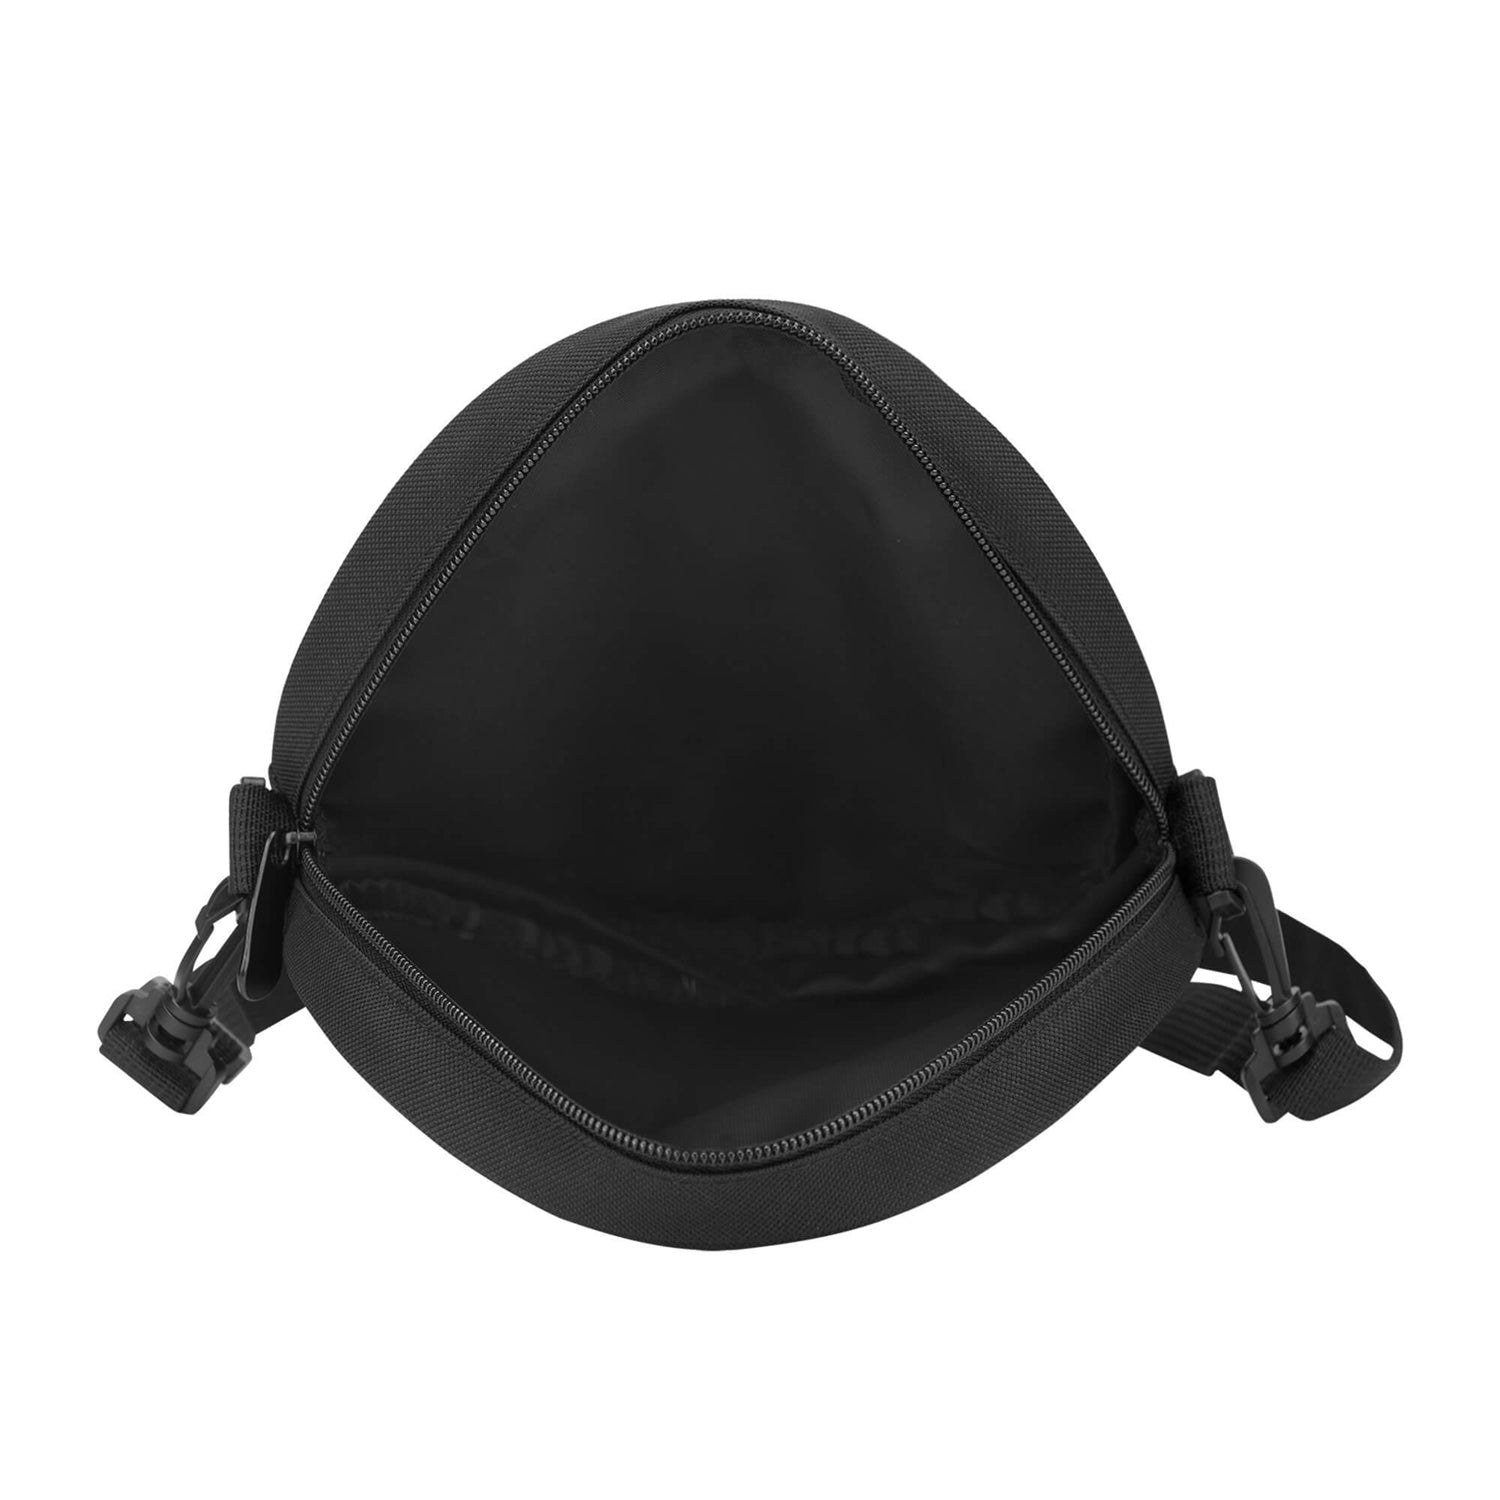 cameron-of-locheil-tartan-round-satchel-bags